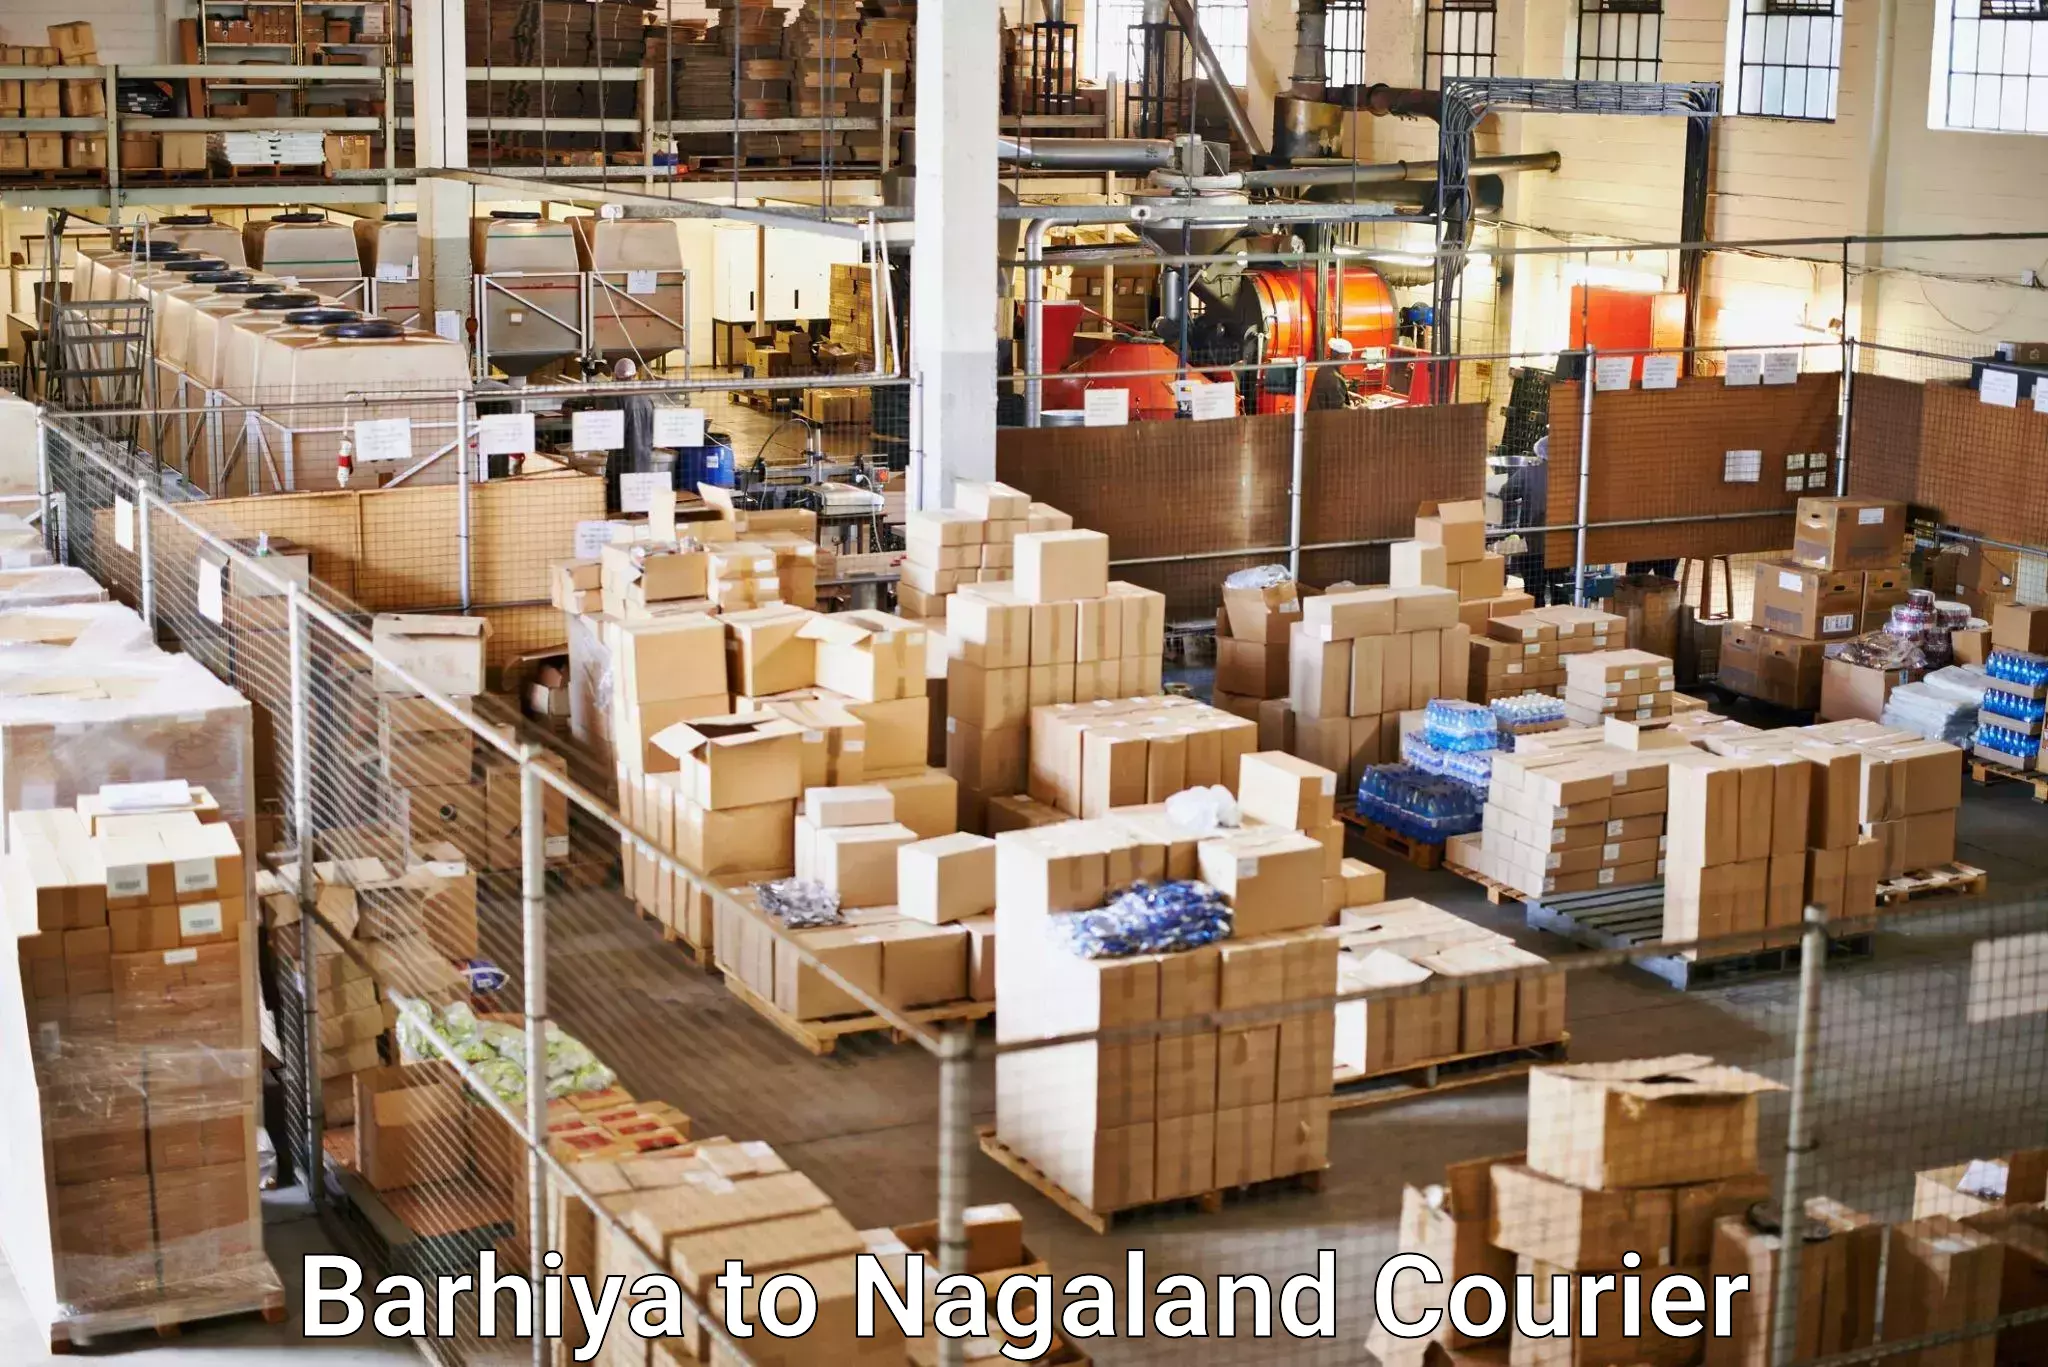 Fast shipping solutions in Barhiya to Nagaland